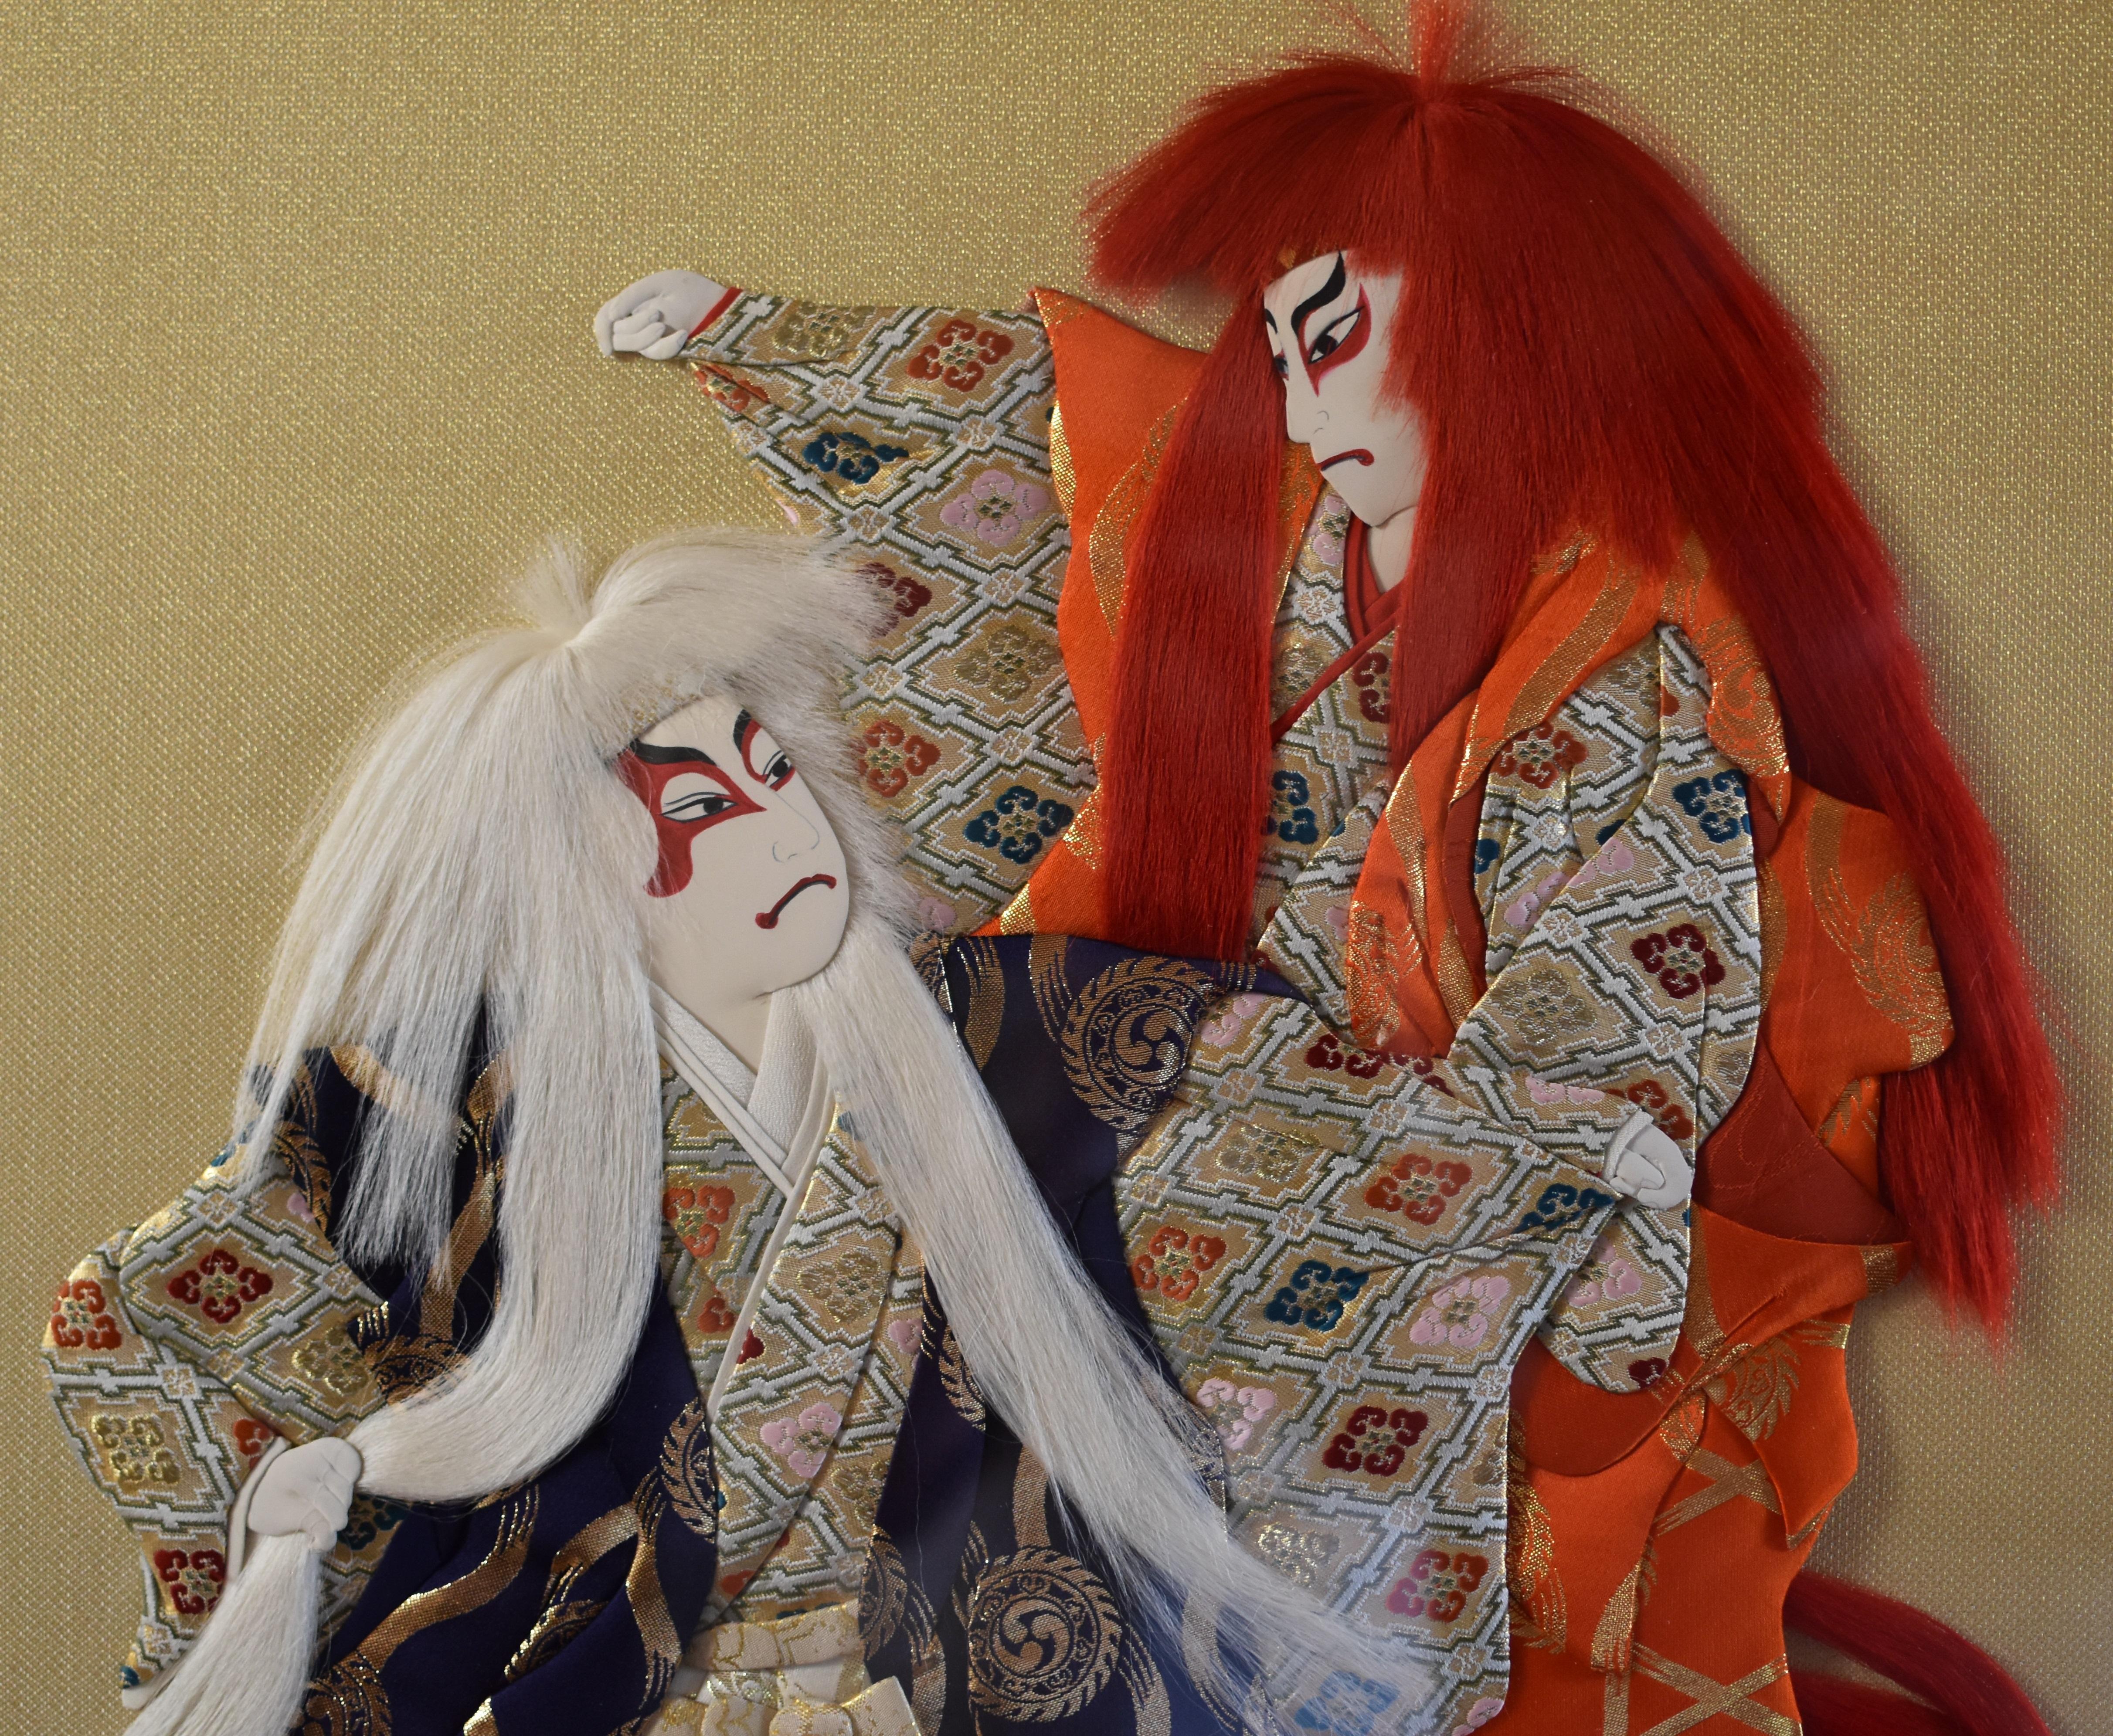 Pièce d'art décorative murale unique et exquise, de style japonais contemporain, réalisée à la main, en rouge, blanc, orange et or, représentant une scène dramatique de Renjishi, l'une des danses les plus populaires du théâtre traditionnel japonais